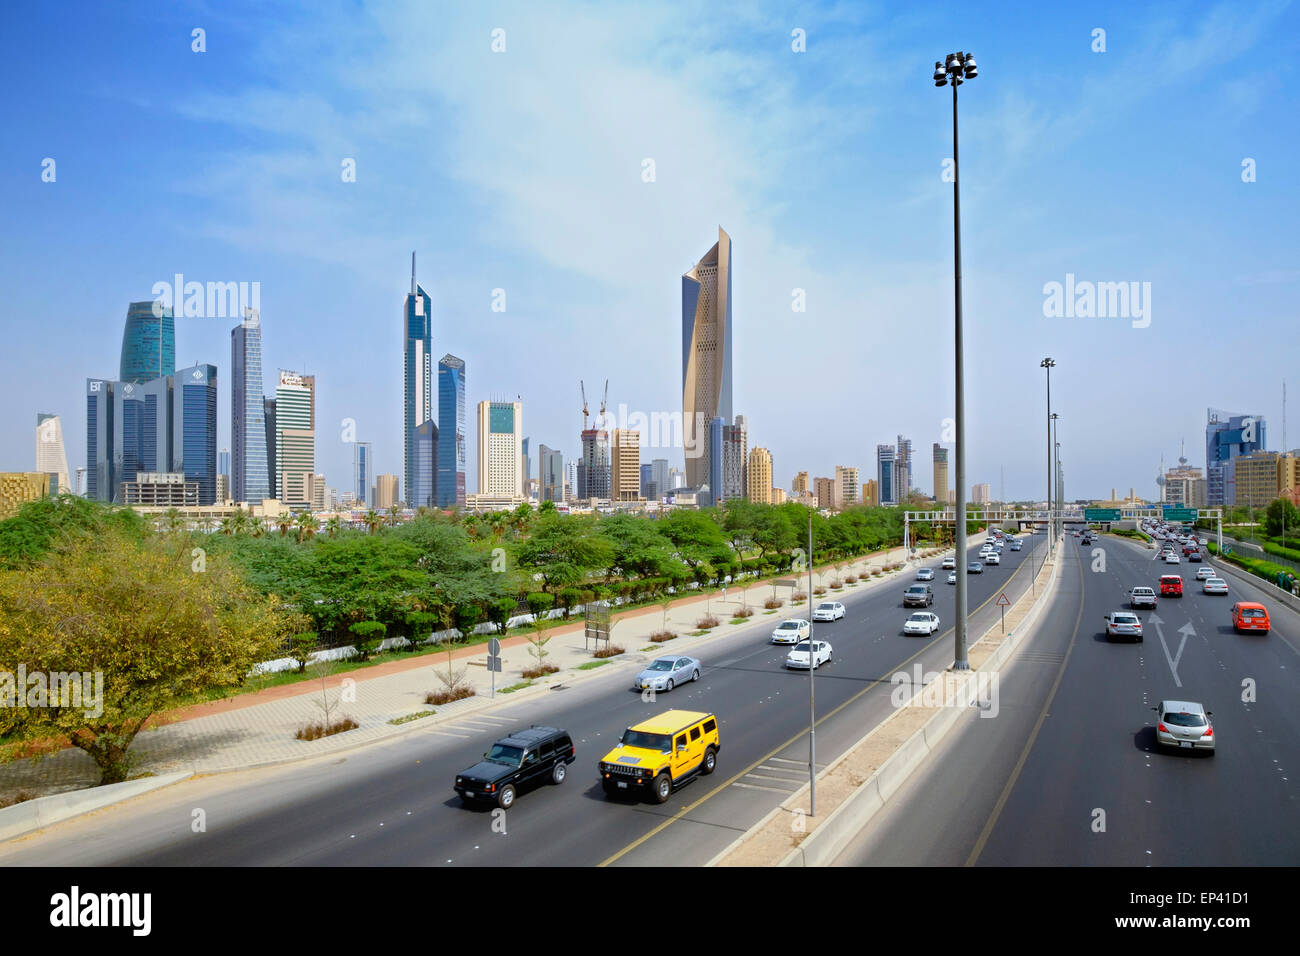 Skyline del Distrito Central de Negocios (CBD) y la primera autopista de circunvalación de la ciudad de Kuwait, Kuwait Foto de stock